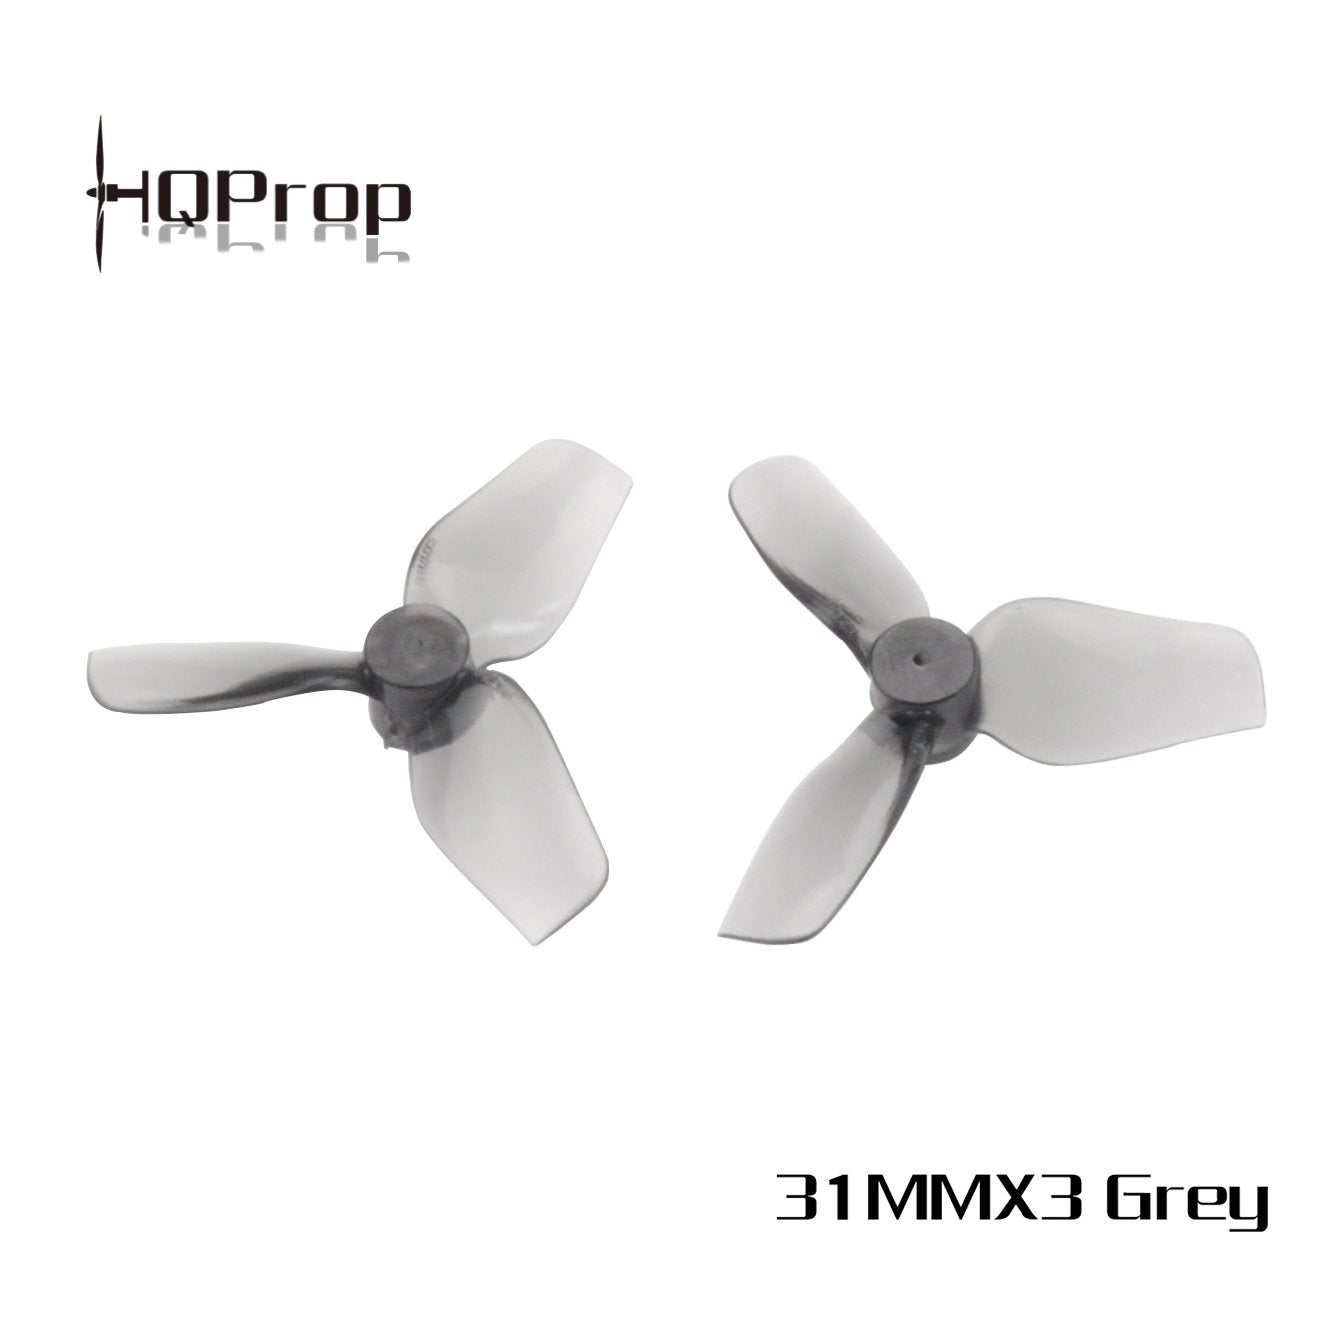 HQProp Micro Whoop Prop 31MMX3 Propellers 5 - HQProp - Drone Authority